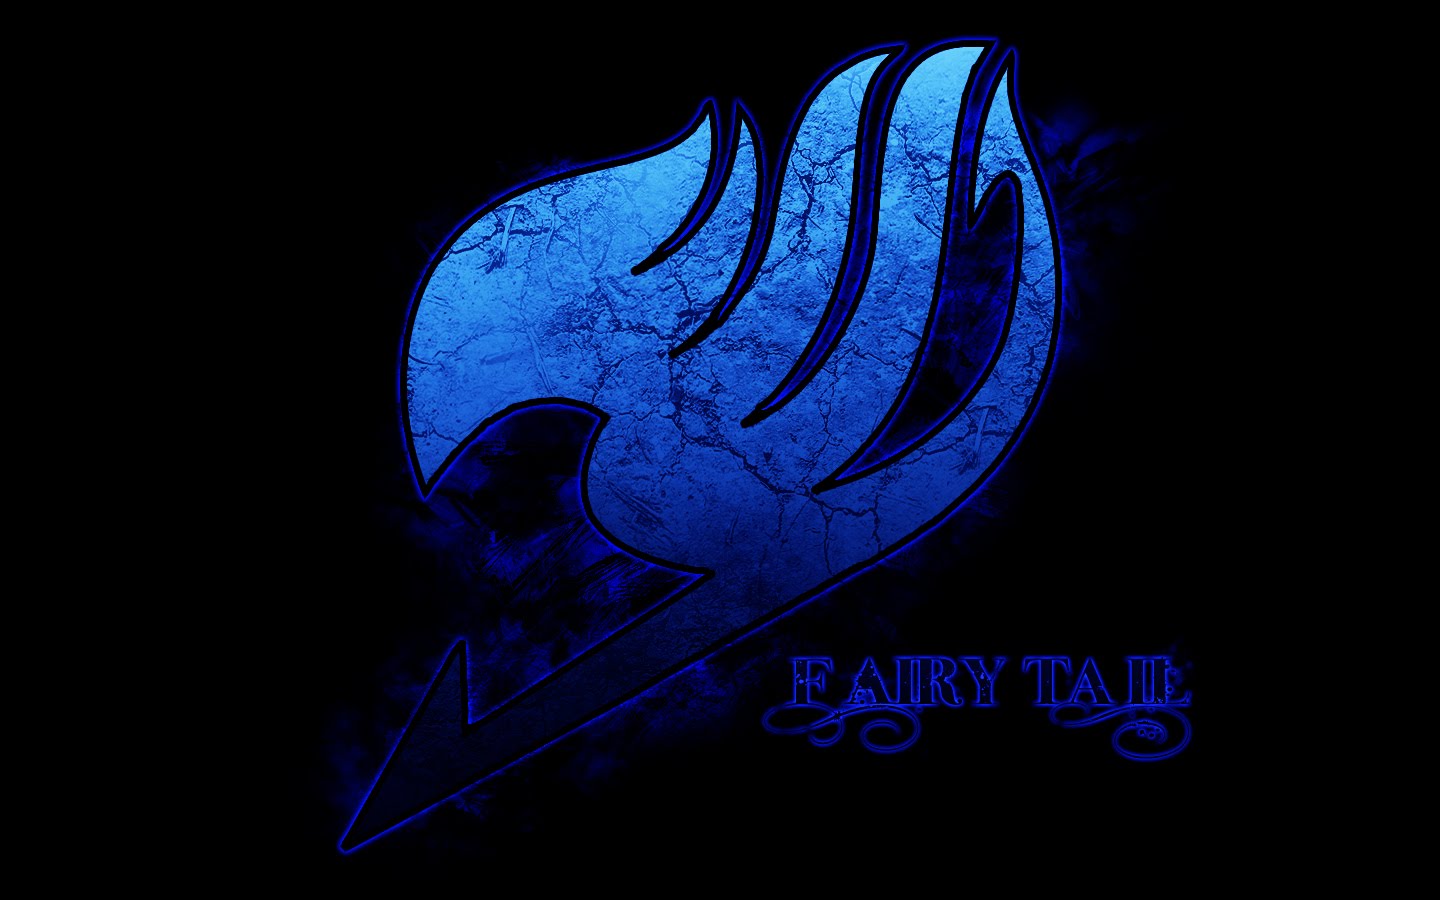 http://2.bp.blogspot.com/_TM0Qm0a6wgE/TCJ7GF05HaI/AAAAAAAAEEo/oeIJMUftmsI/s1600/blue+fairy_tail+logo.jpg